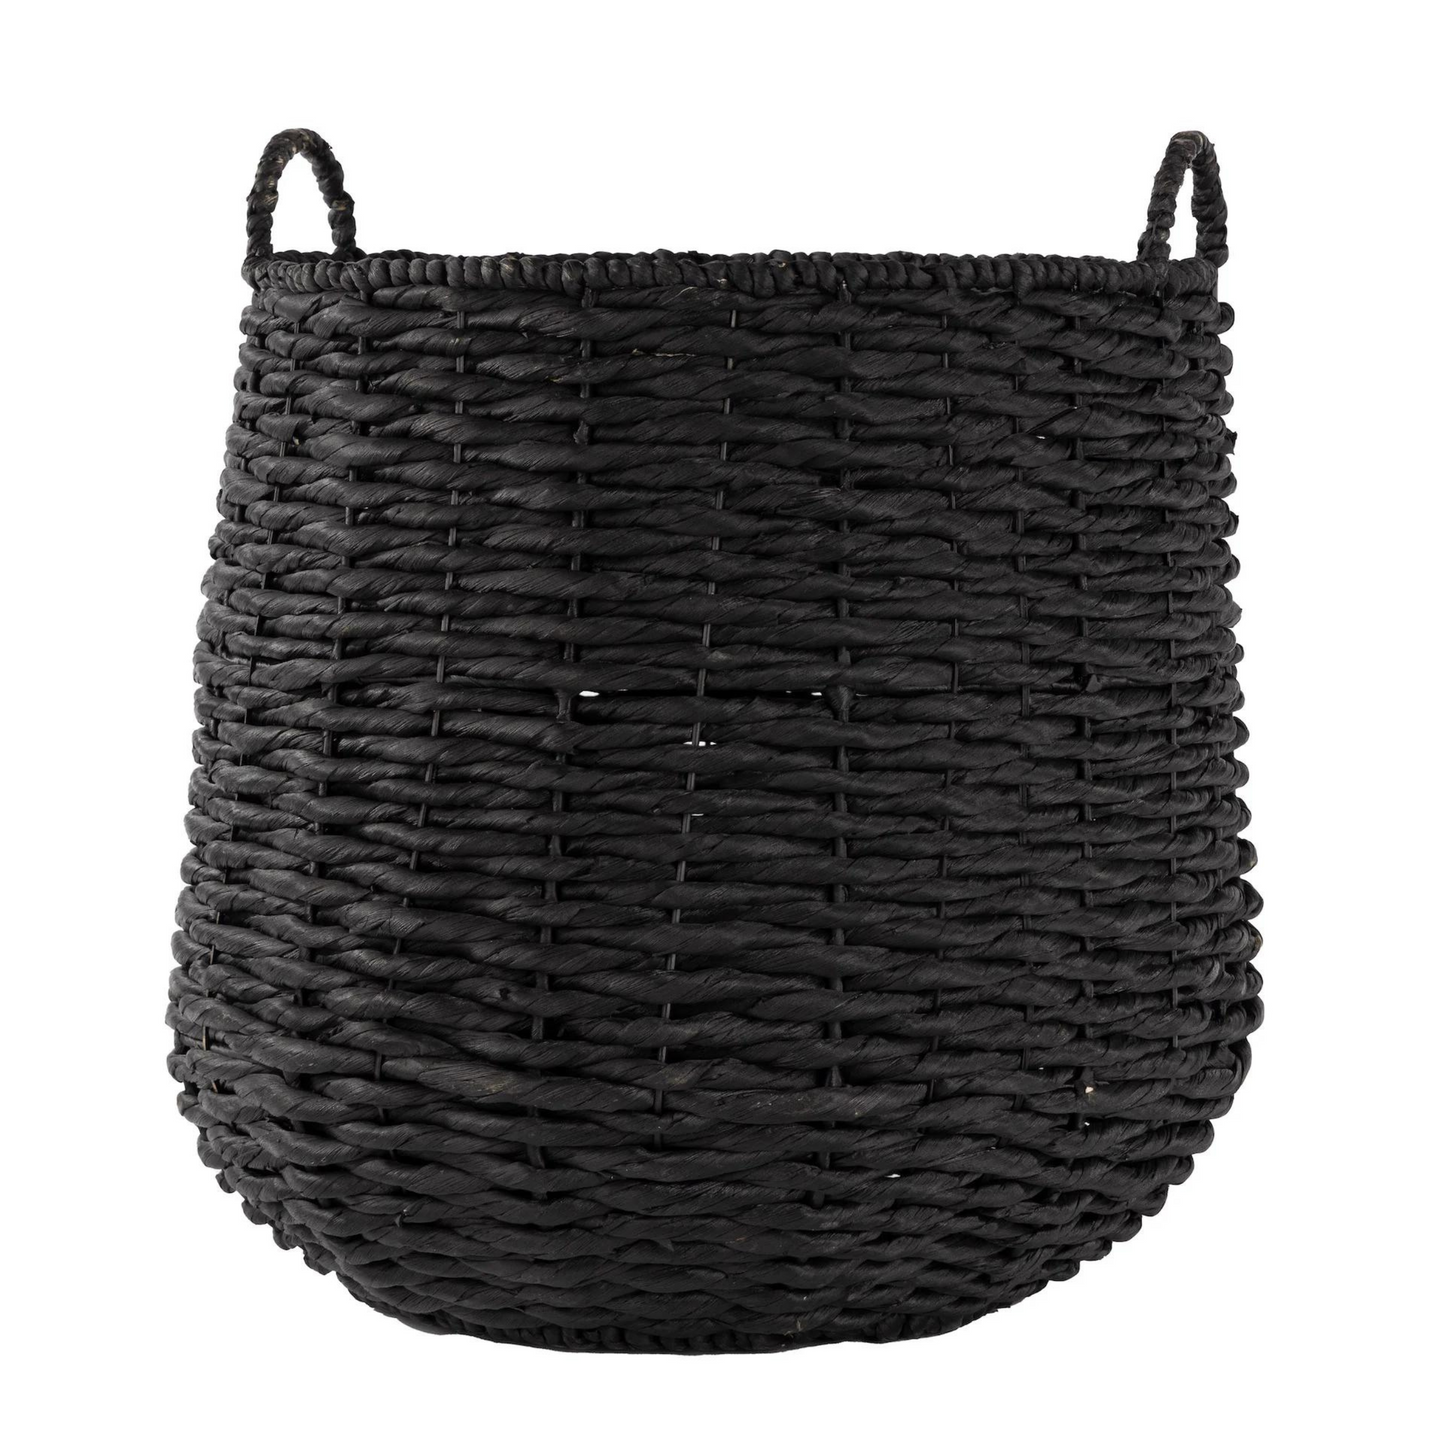 Black woven basket